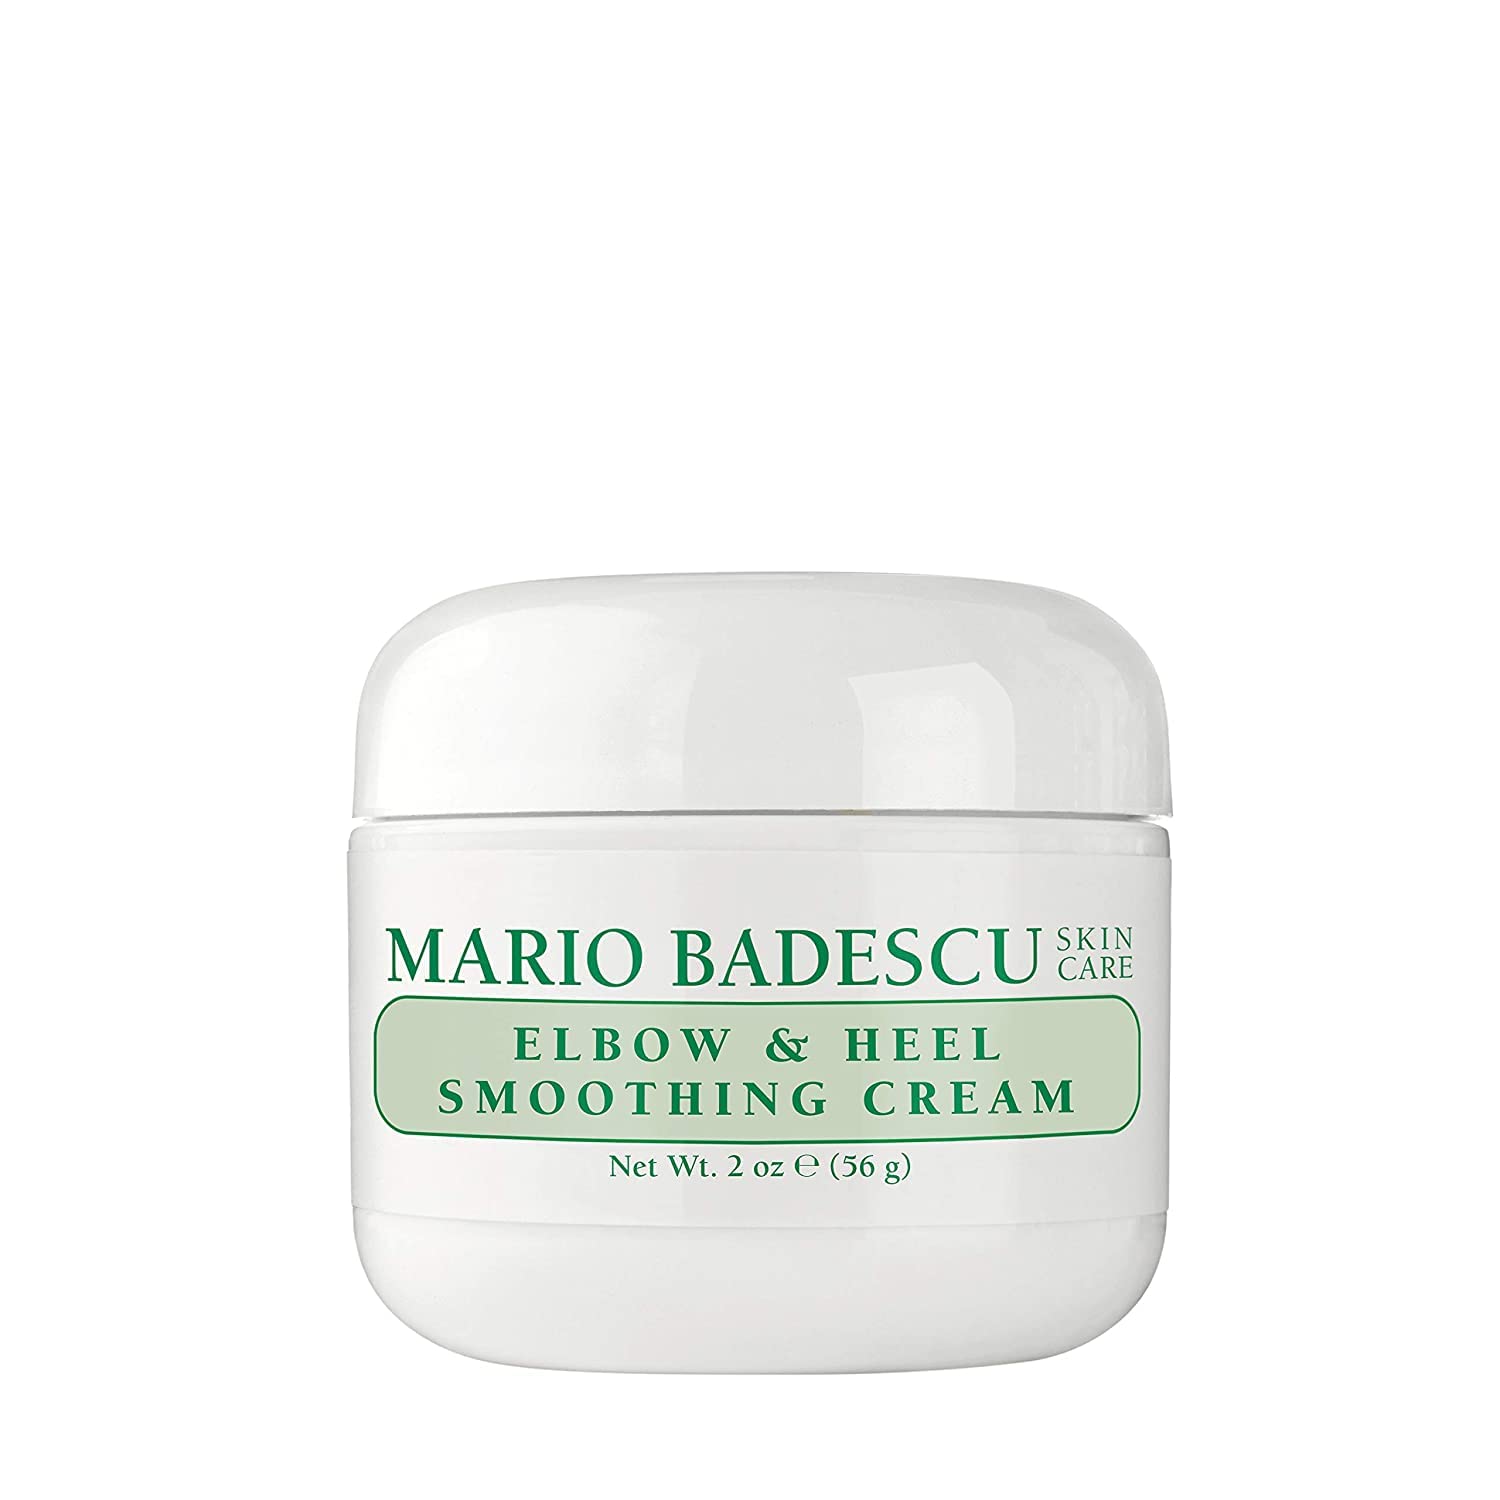 Mario Badescu Elbow & Heel Smoothing Cream, 2 oz